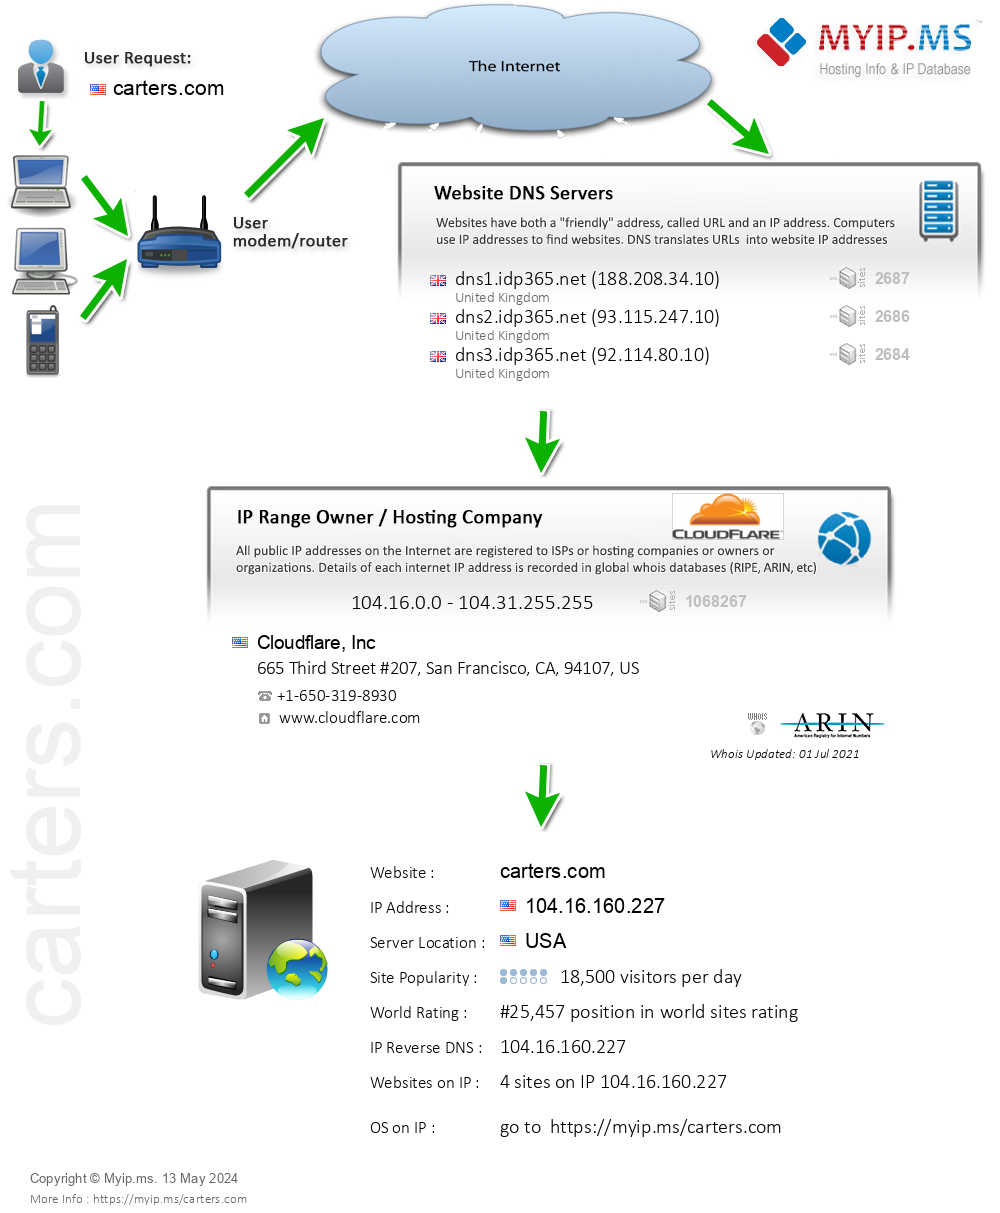 Carters.com - Website Hosting Visual IP Diagram